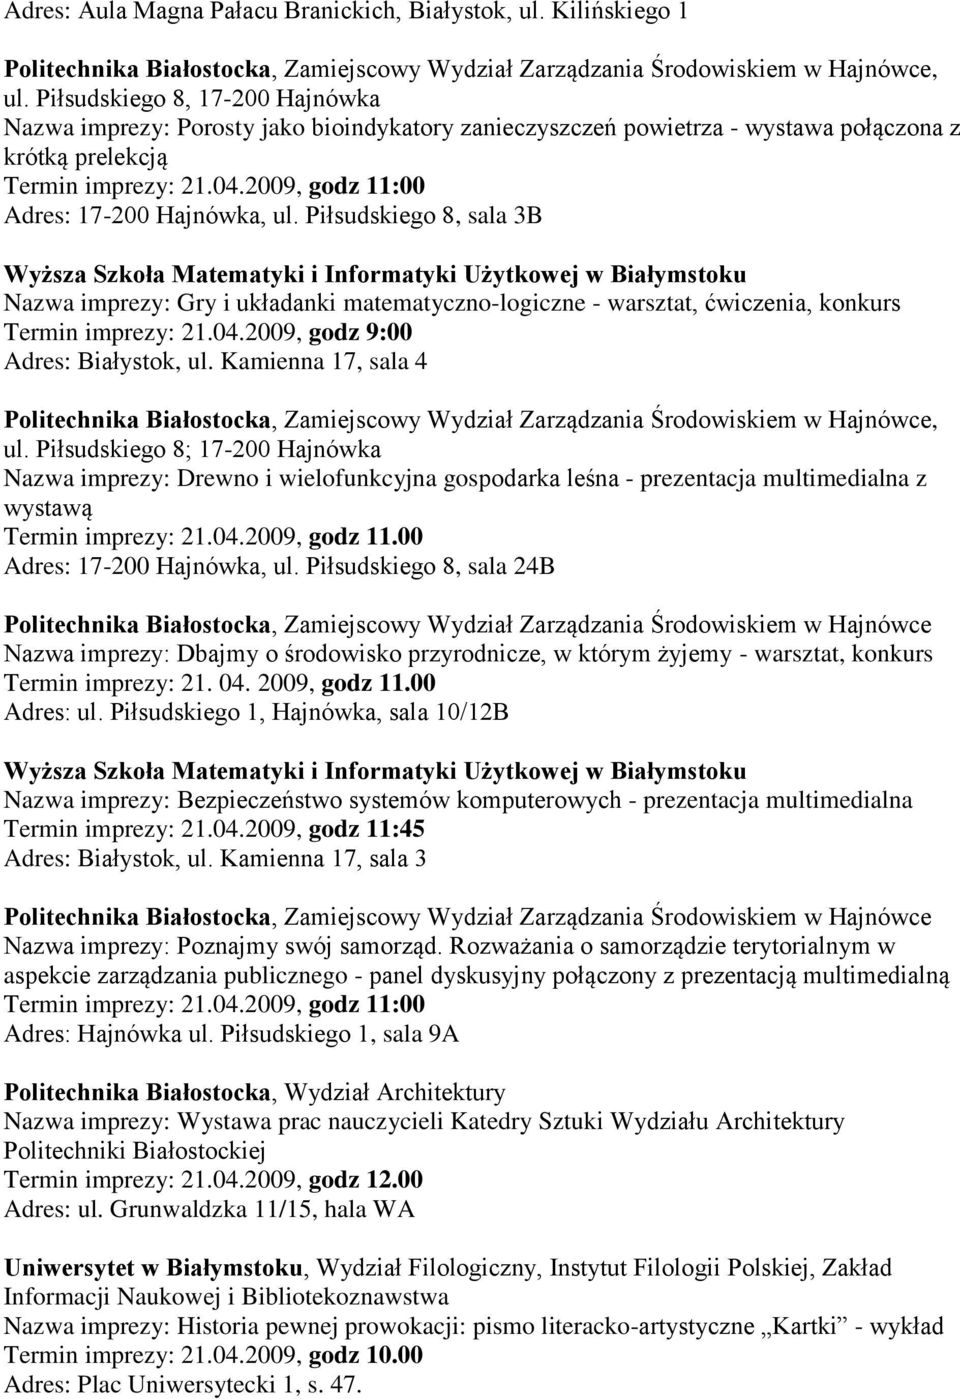 Piłsudskiego 8, sala 3B Wyższa Szkoła Matematyki i Informatyki Użytkowej w Białymstoku Nazwa imprezy: Gry i układanki matematyczno-logiczne - warsztat, ćwiczenia, konkurs Termin imprezy: 21.04.